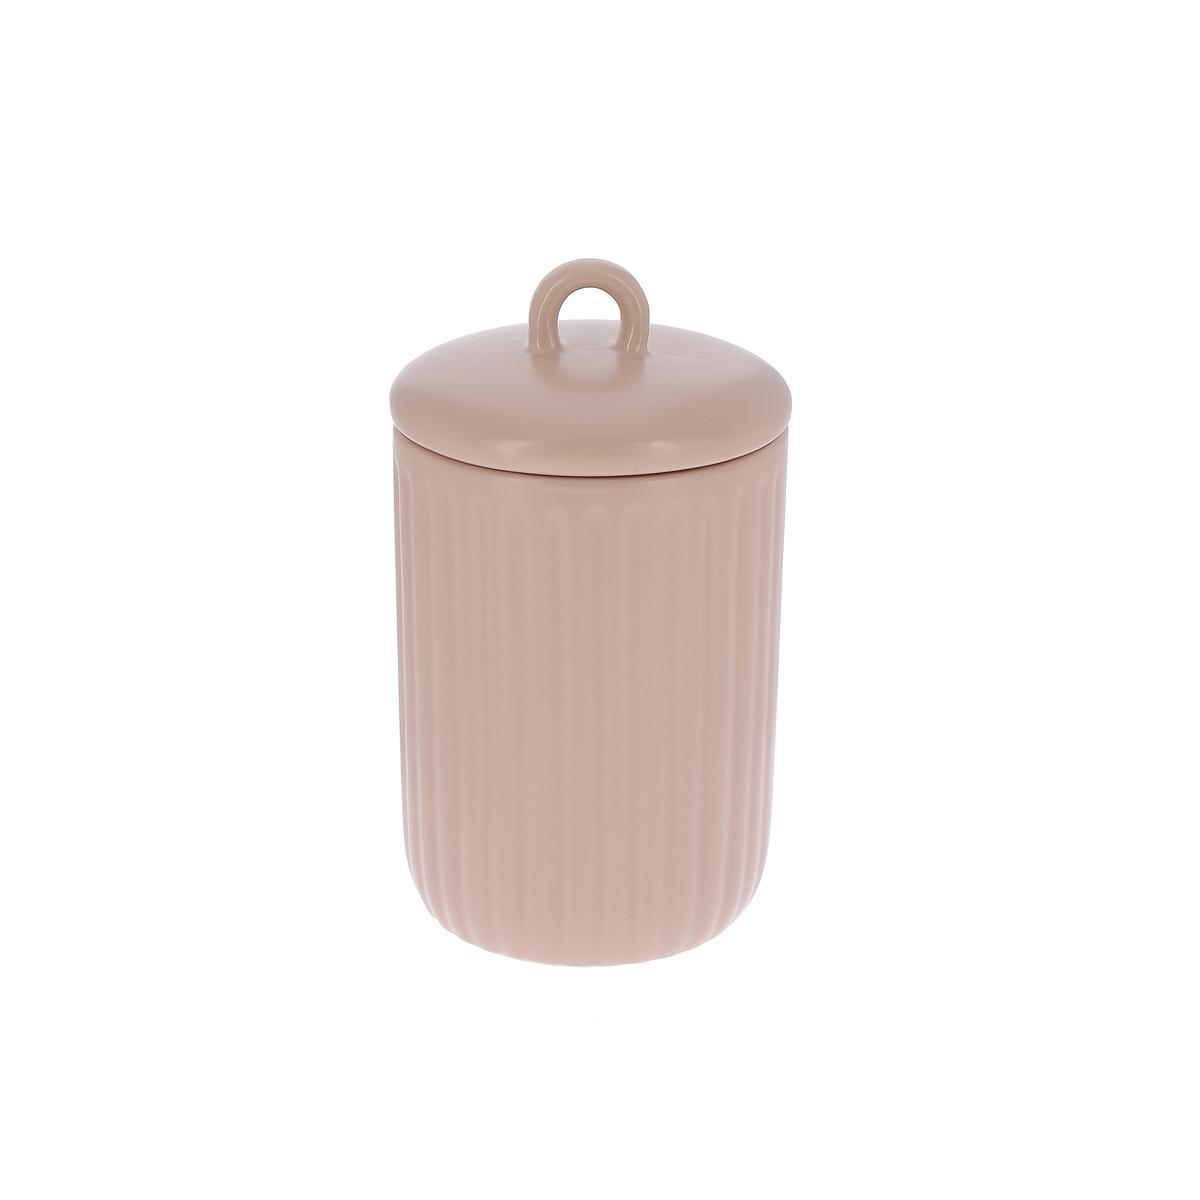 Pot en céramique rose - K.KOON